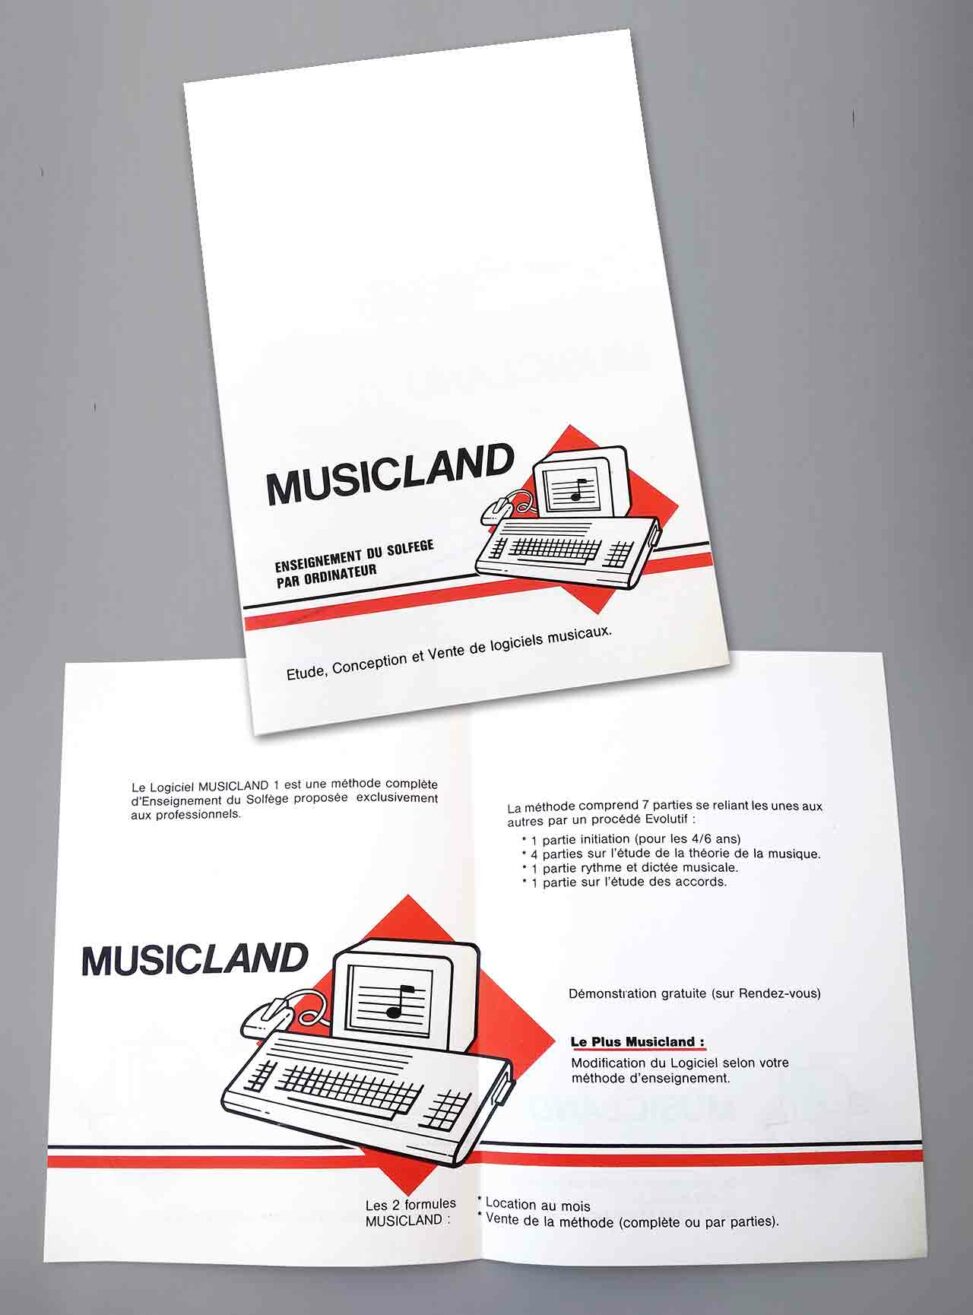 Musicland - Logiciel d'apprentissage du solfège et de la musique par ordinateur - 1988 - Marc-André BD Illustration Graphisme Limoges